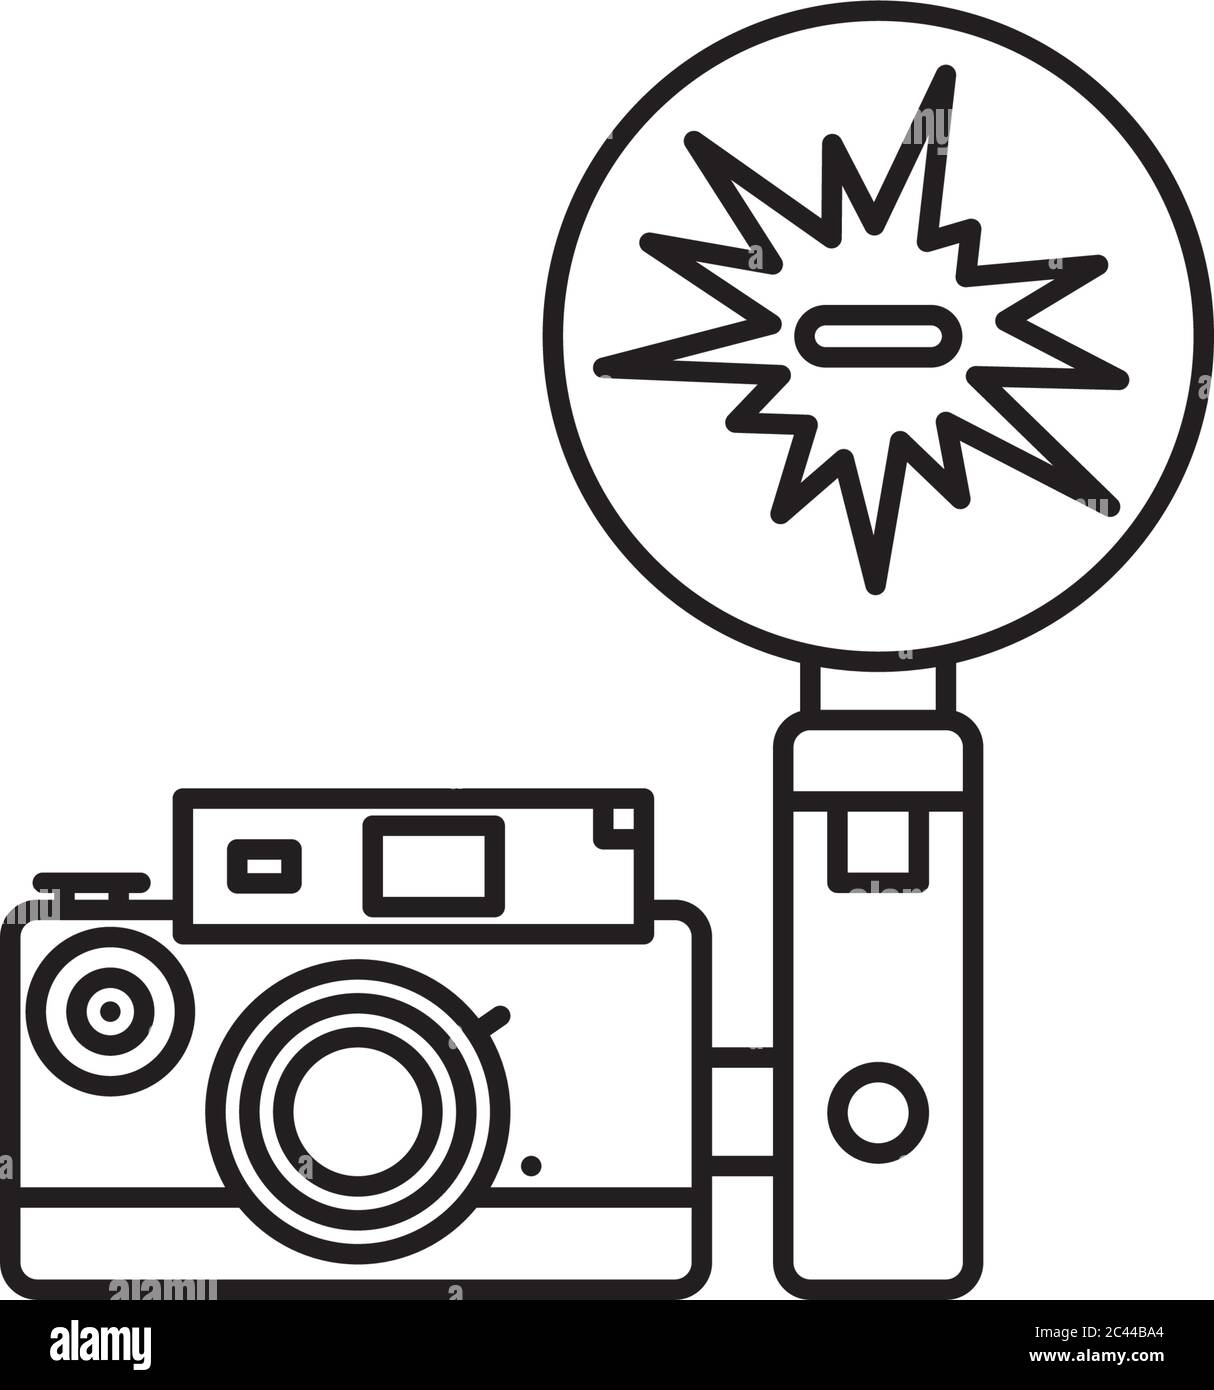 Fotocamera vintage con icona della linea vettoriale flash attached. Supporti analogici e premere il simbolo di contorno. Illustrazione Vettoriale